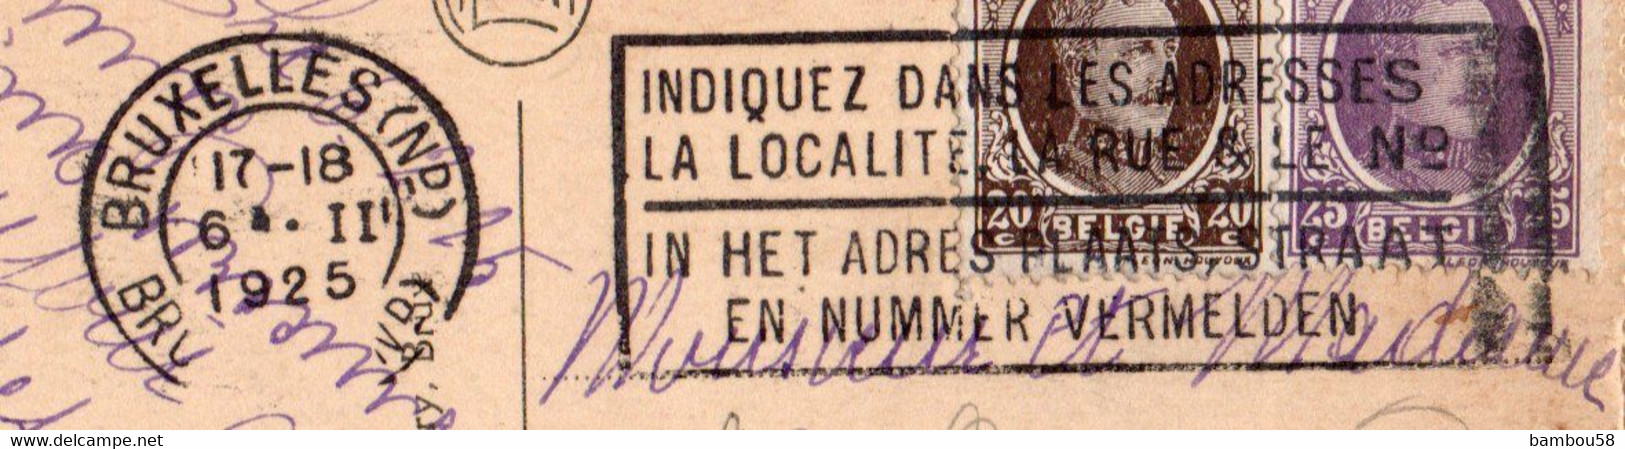 BRUXELLES * BELGIQUE * COLONNE DU CONGRES * TOMBEAU DU SOLDAT INCONNU 11.11.1922 * FLAMME - Brussel Nationale Luchthaven